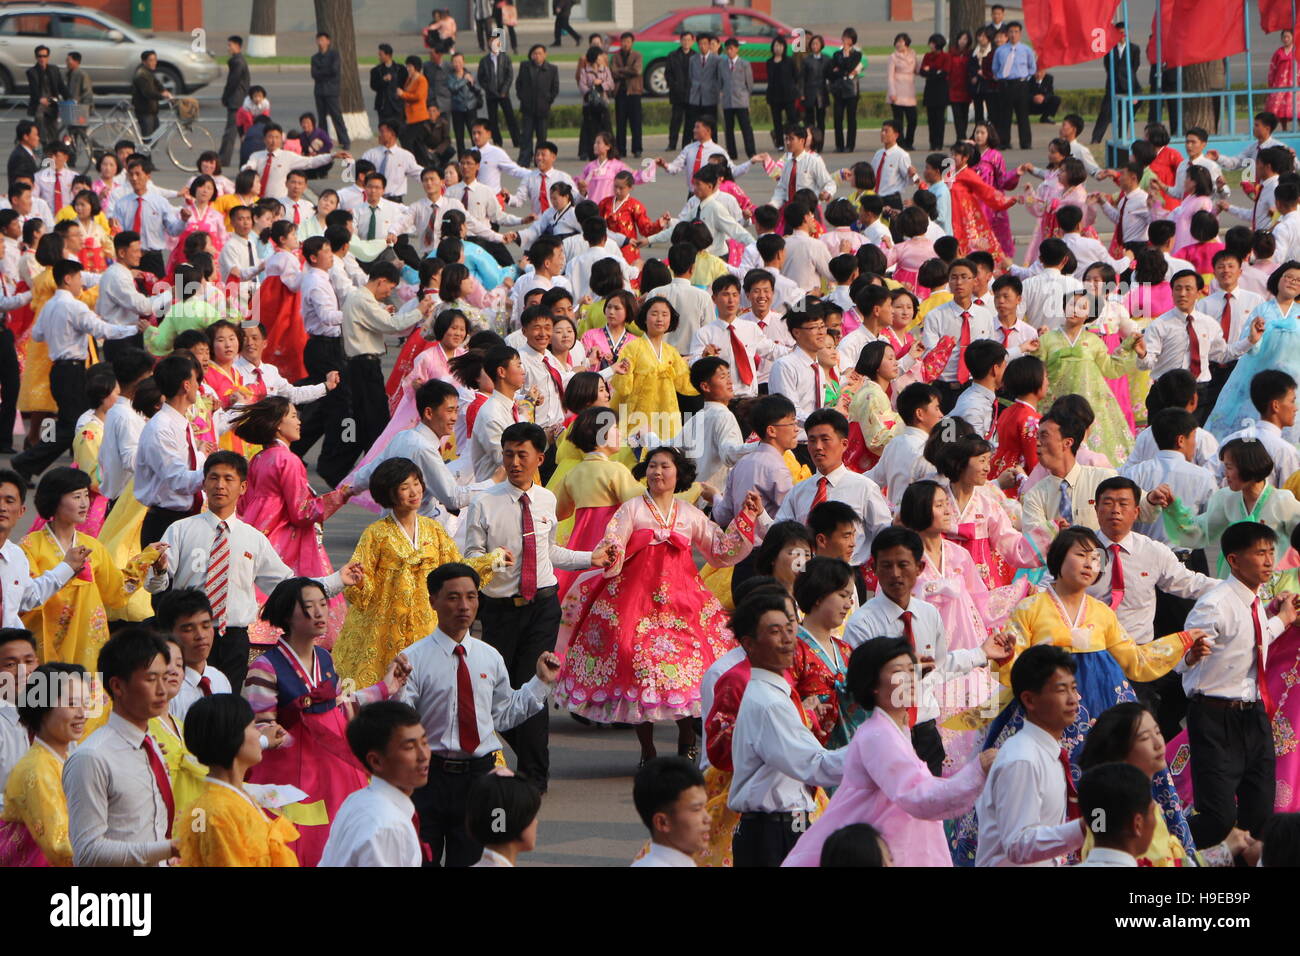 Mass dance in Pyongyang Stock Photo